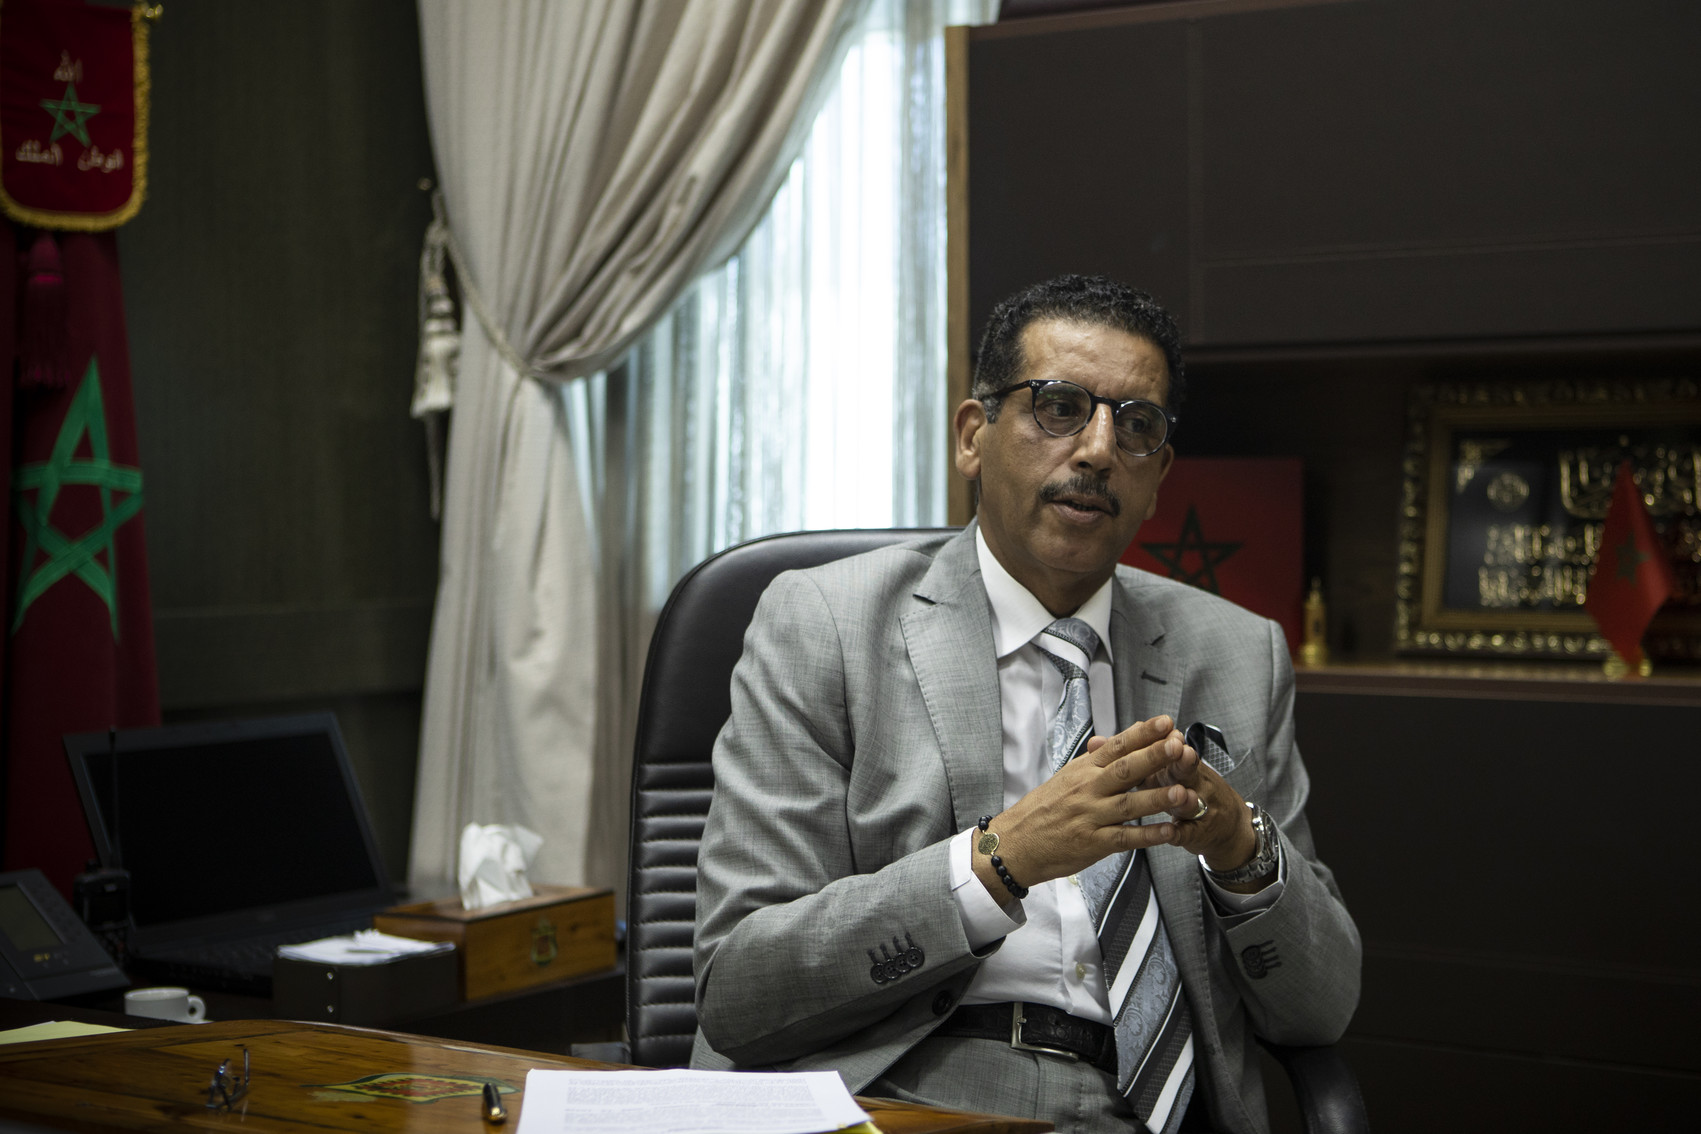 Marocco, il capo della lotta al terrorismo: “Un flagello, unendo sforzi lo argineremo”